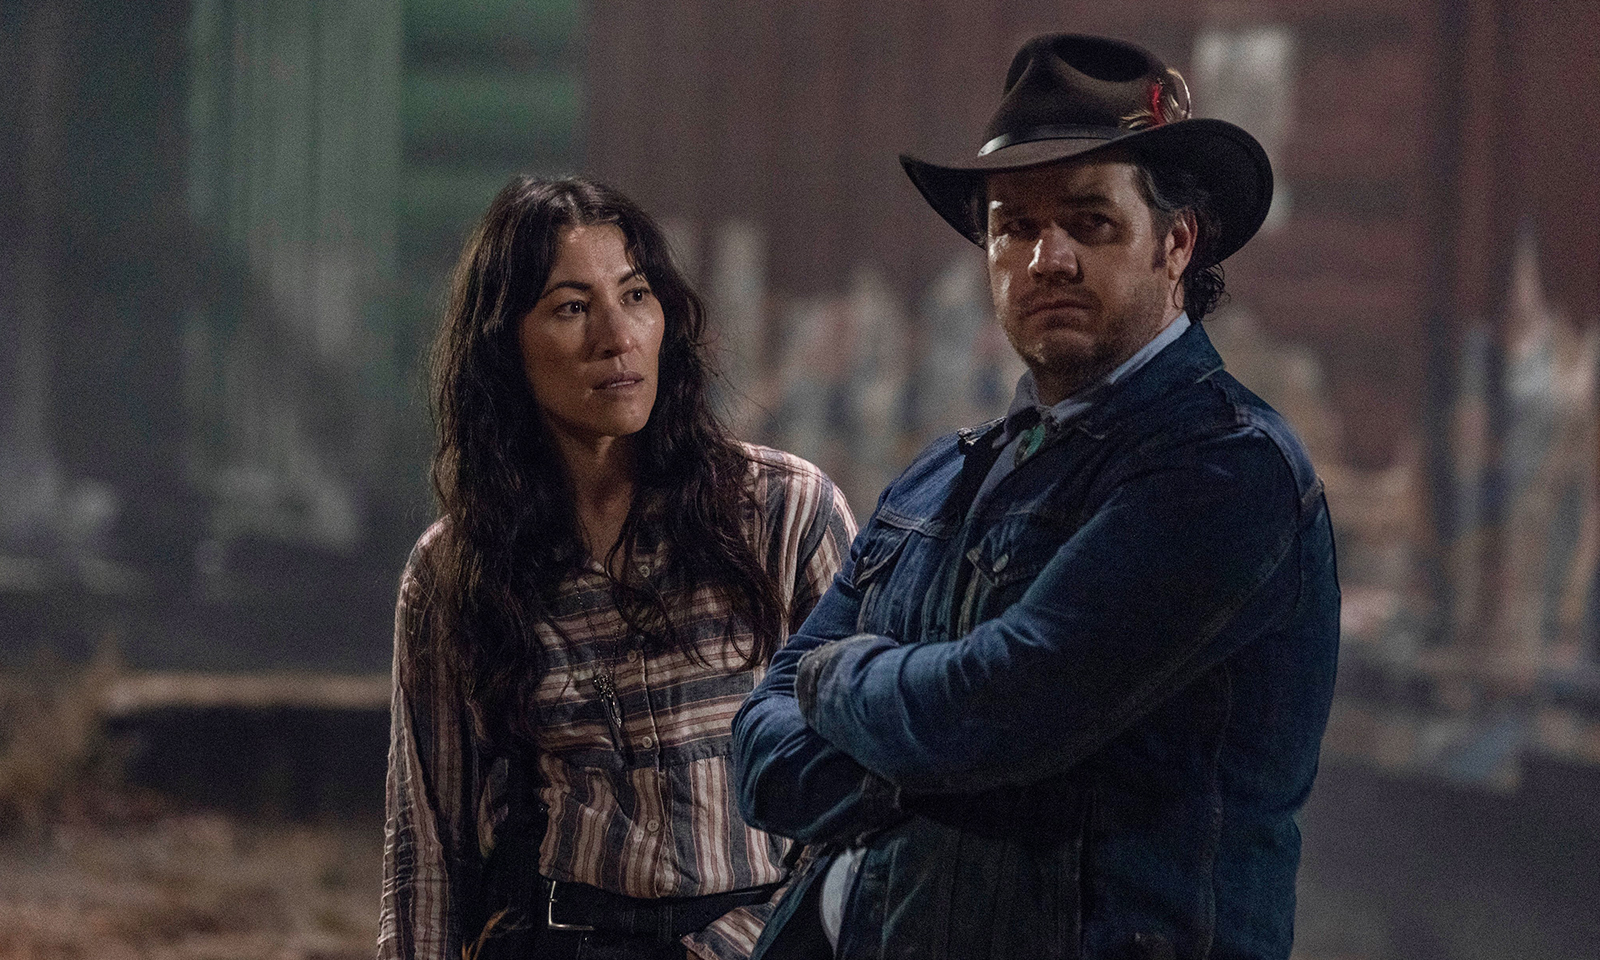 Yumiko e Eugene esperando por Stephanie nos trilhos de trem em imagem do episódio "A Certain Doom" da 10ª temporada de The Walking Dead